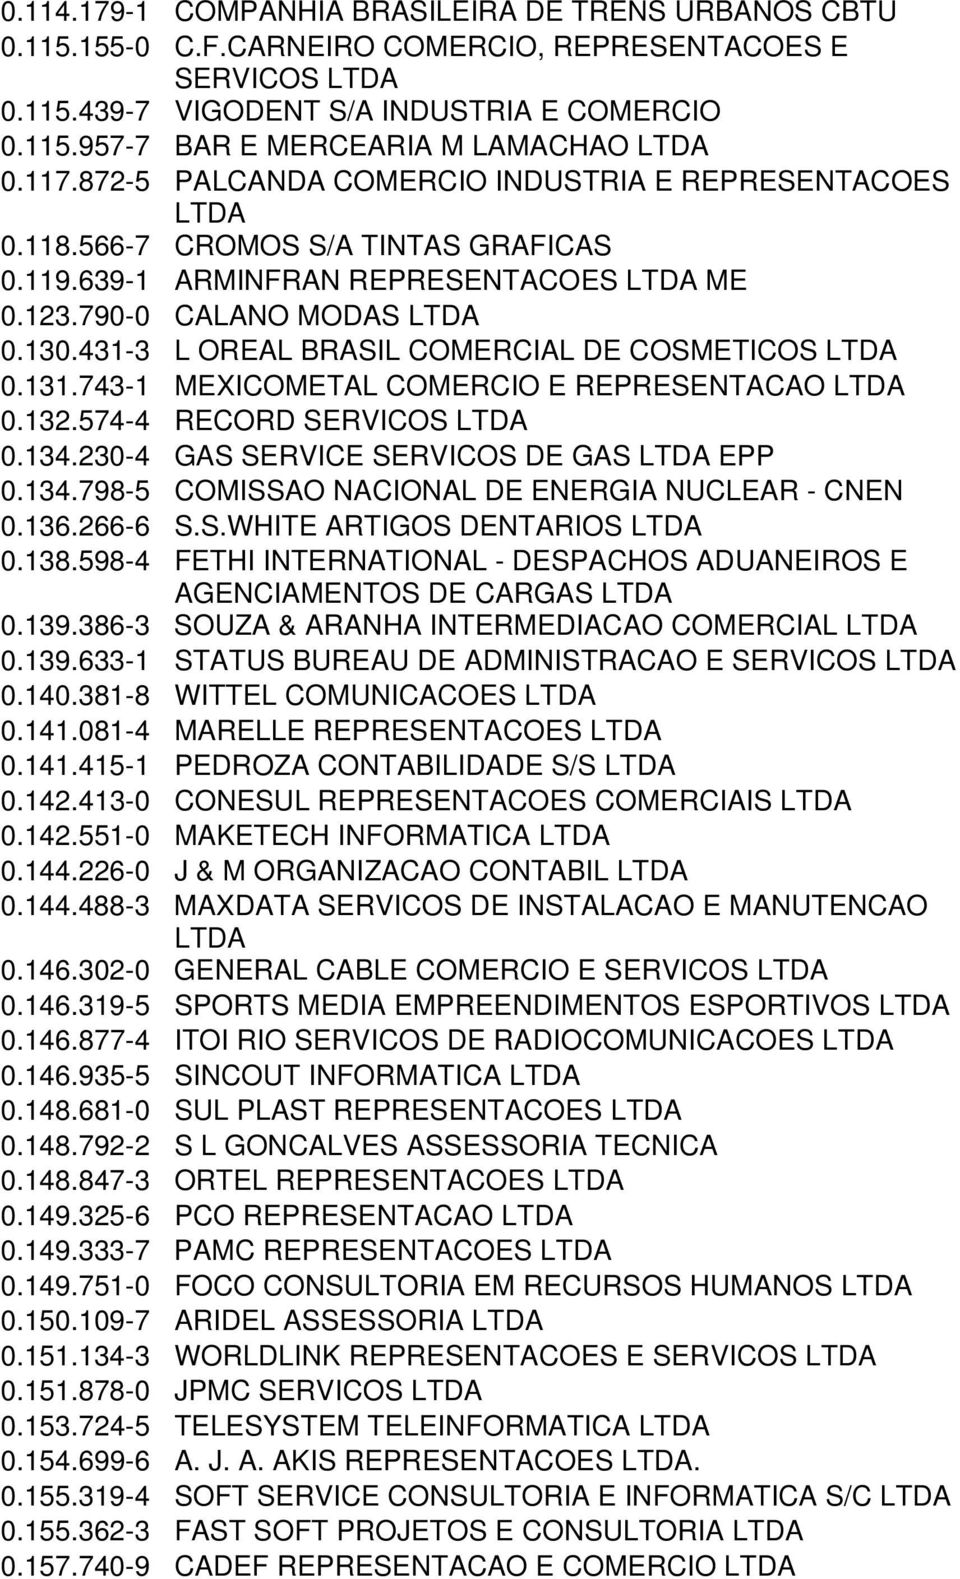 431-3 L OREAL BRASIL COMERCIAL DE COSMETICOS 0.131.743-1 MEXICOMETAL COMERCIO E REPRESENTACAO 0.132.574-4 RECORD SERVICOS 0.134.230-4 GAS SERVICE SERVICOS DE GAS EPP 0.134.798-5 COMISSAO NACIONAL DE ENERGIA NUCLEAR - CNEN 0.